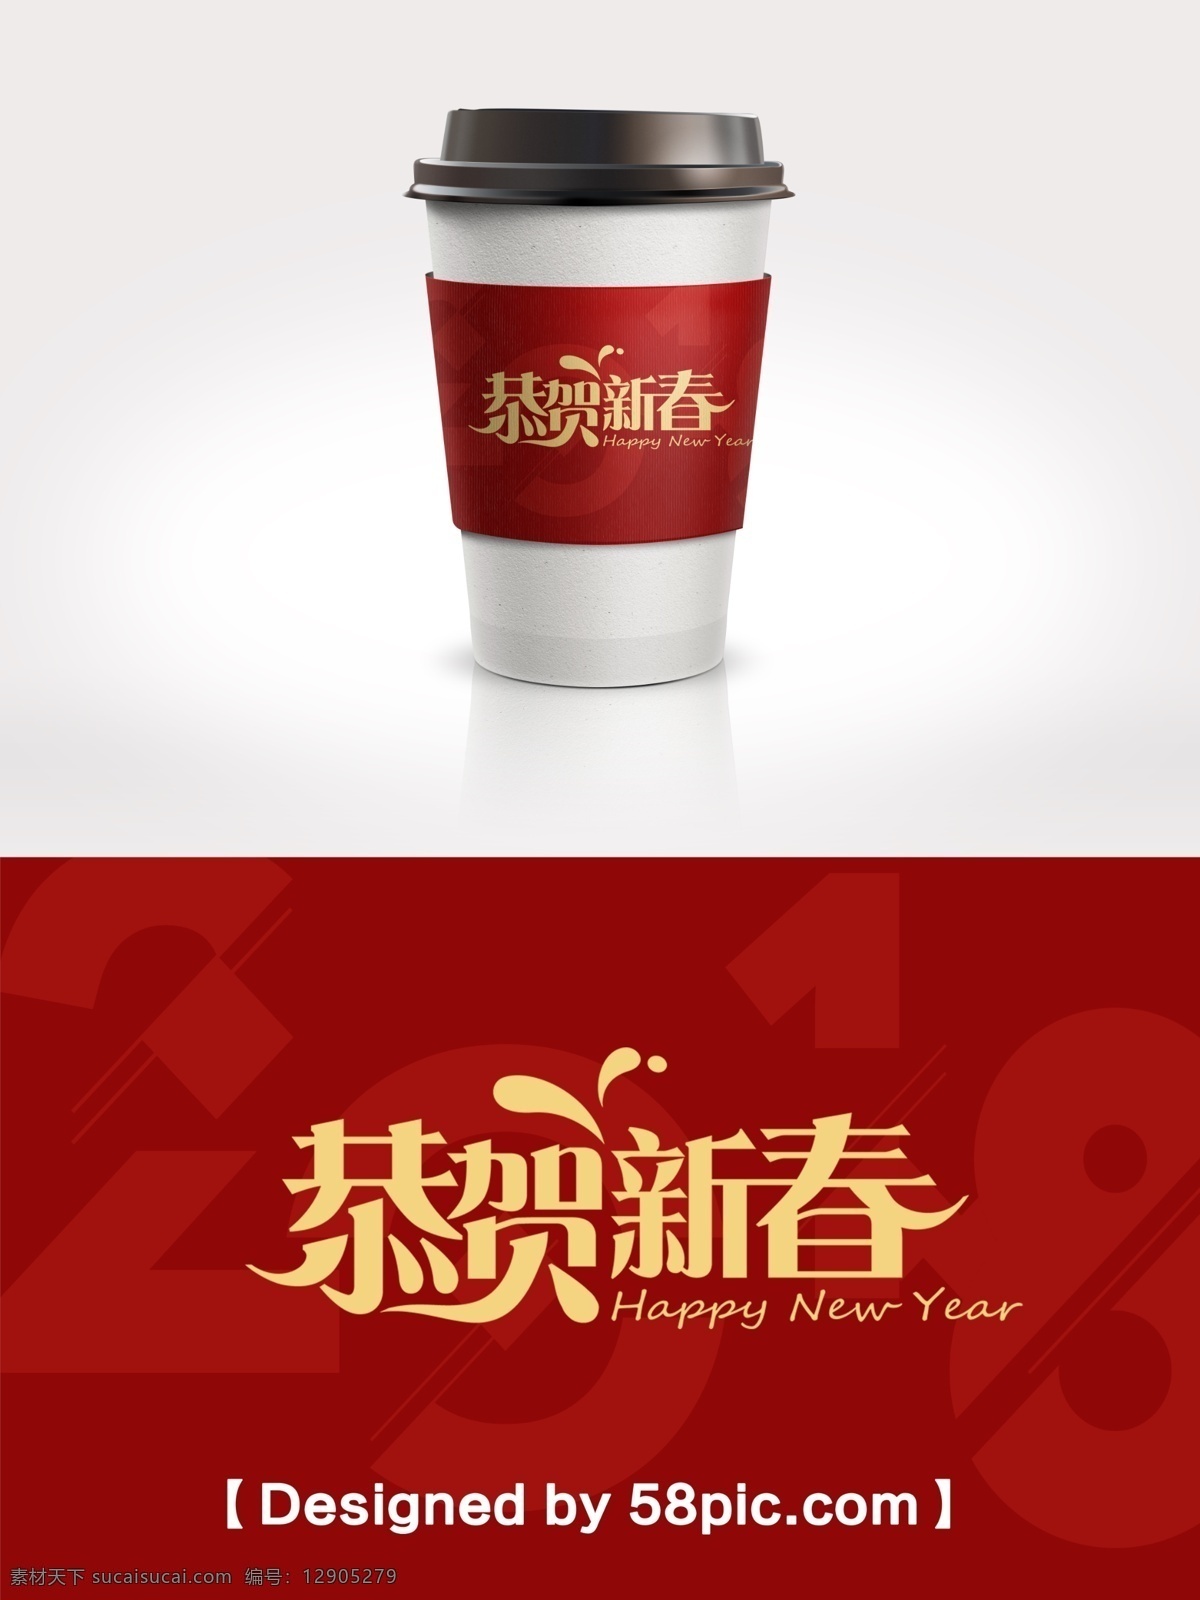 2018 恭贺 新春 咖啡杯 套 2018新年 psd素材 恭贺新春 广告设计模版 节日包装 咖啡杯套设计 时尚大气 中国红